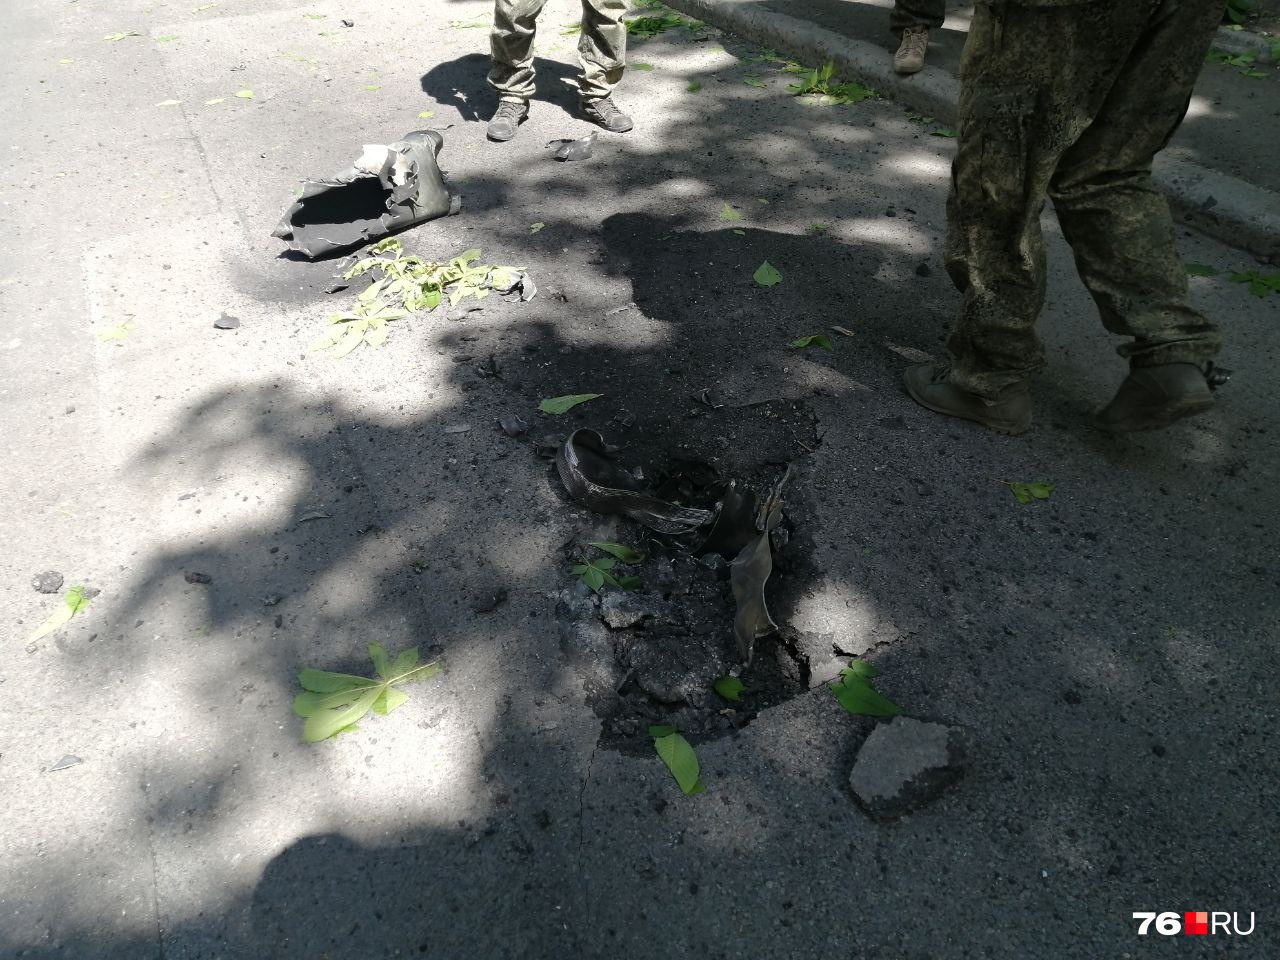 Михаил сообщает из Донецка, что снаряды прилетают в город регулярно